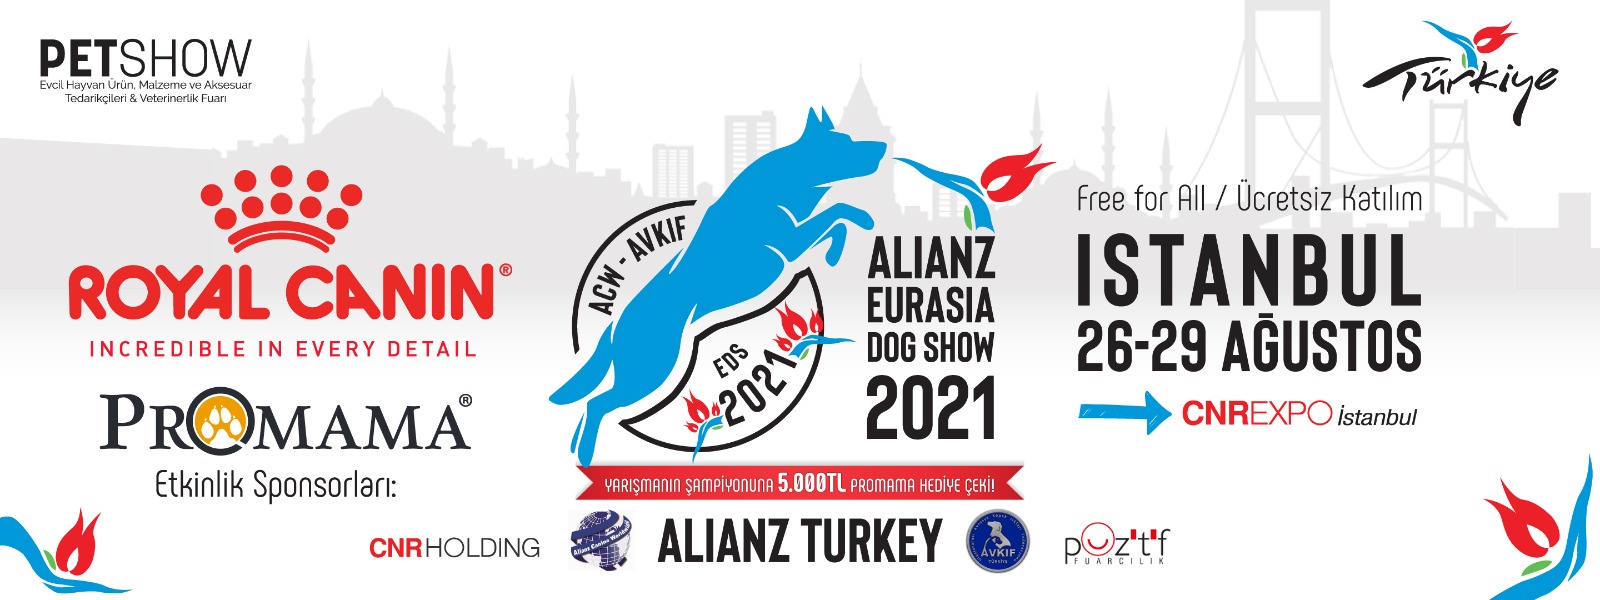 ALIANZ TURKEY-AVKIF INTERNATIONAL EURASIA DOG SHOW ISTANBUL Pet Show 26-29 Ağustos 2021